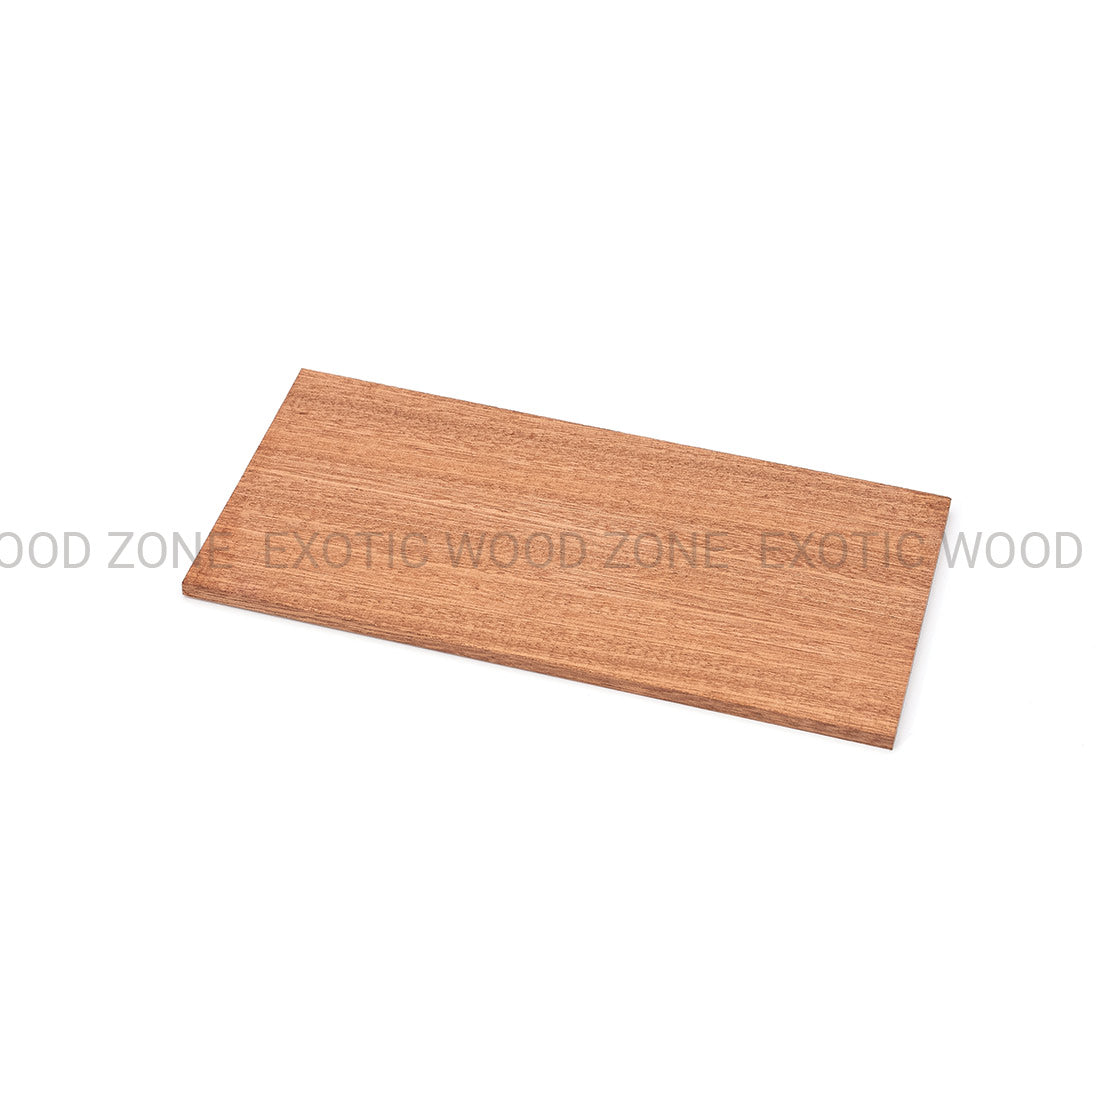 Sapele Guitar Headplate Wood Blank Exotic Wood Zone Headplates